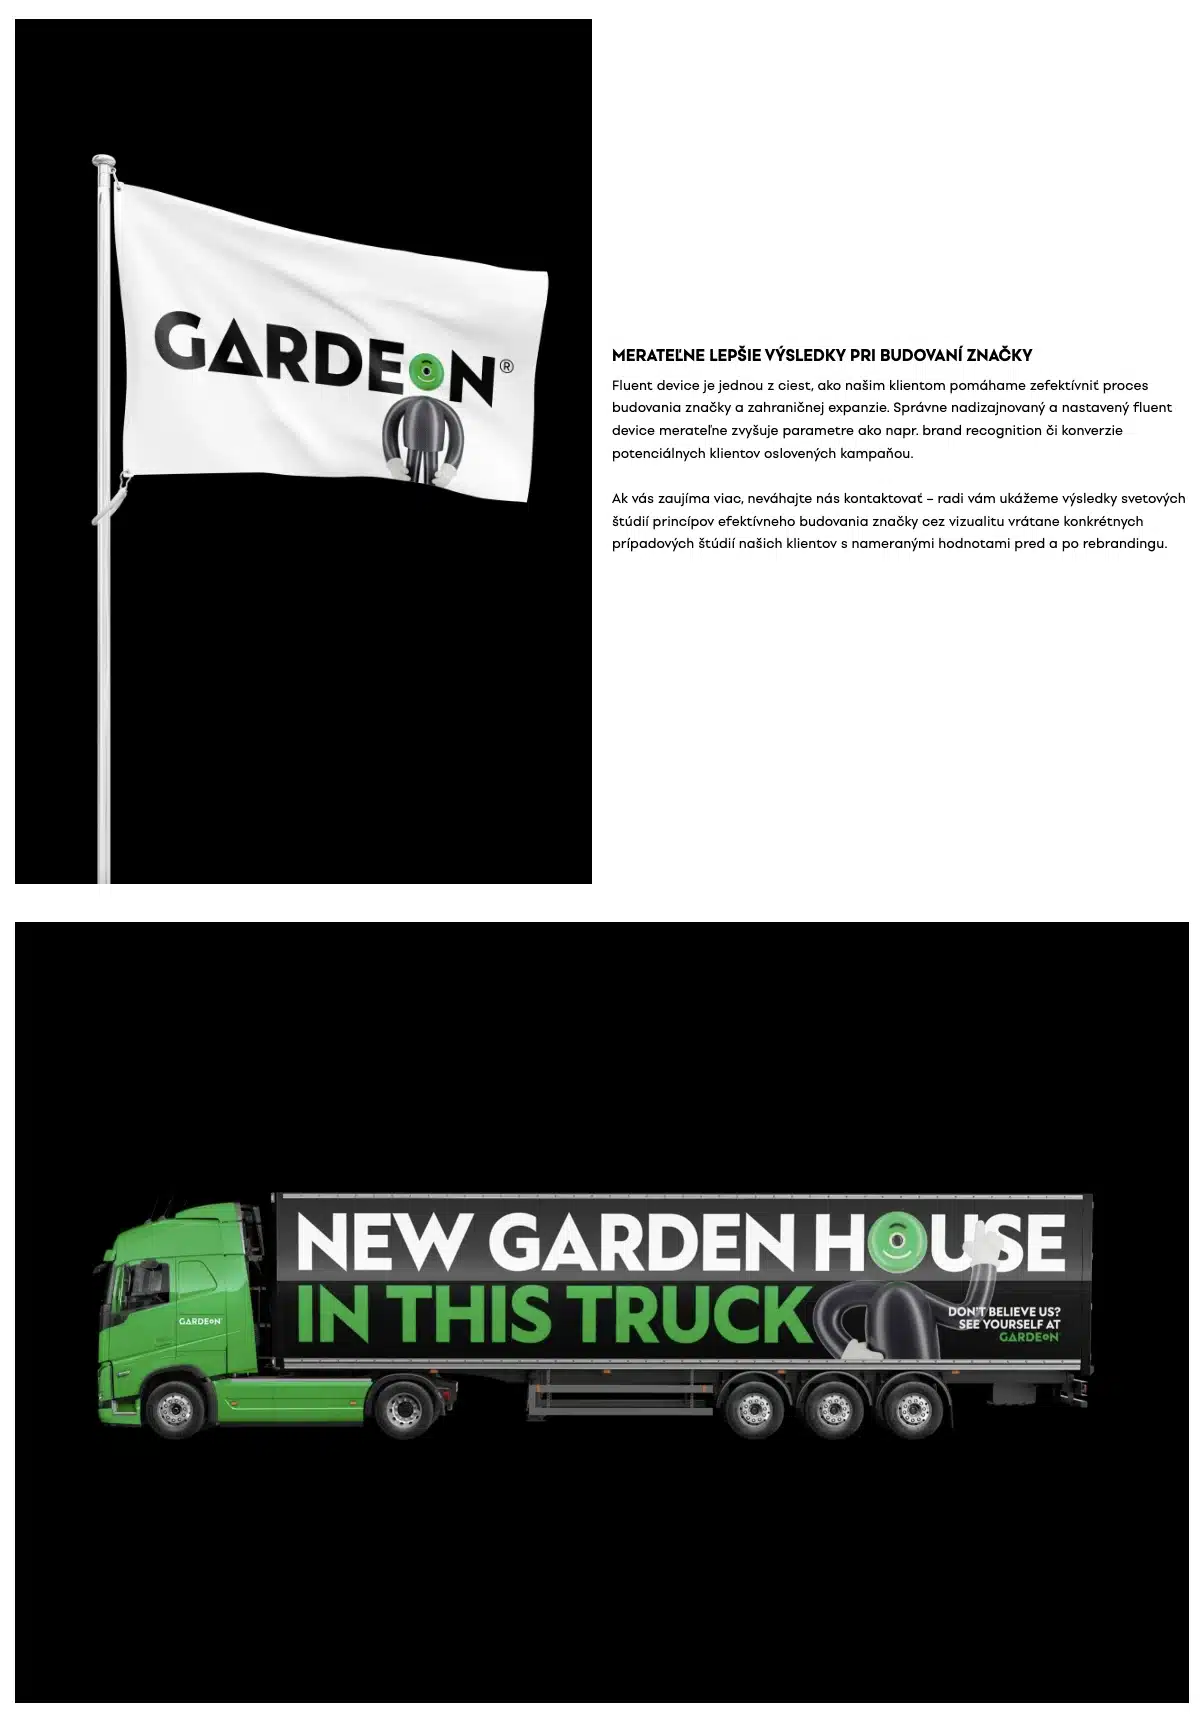 GARDEON branding návěs na kamionu